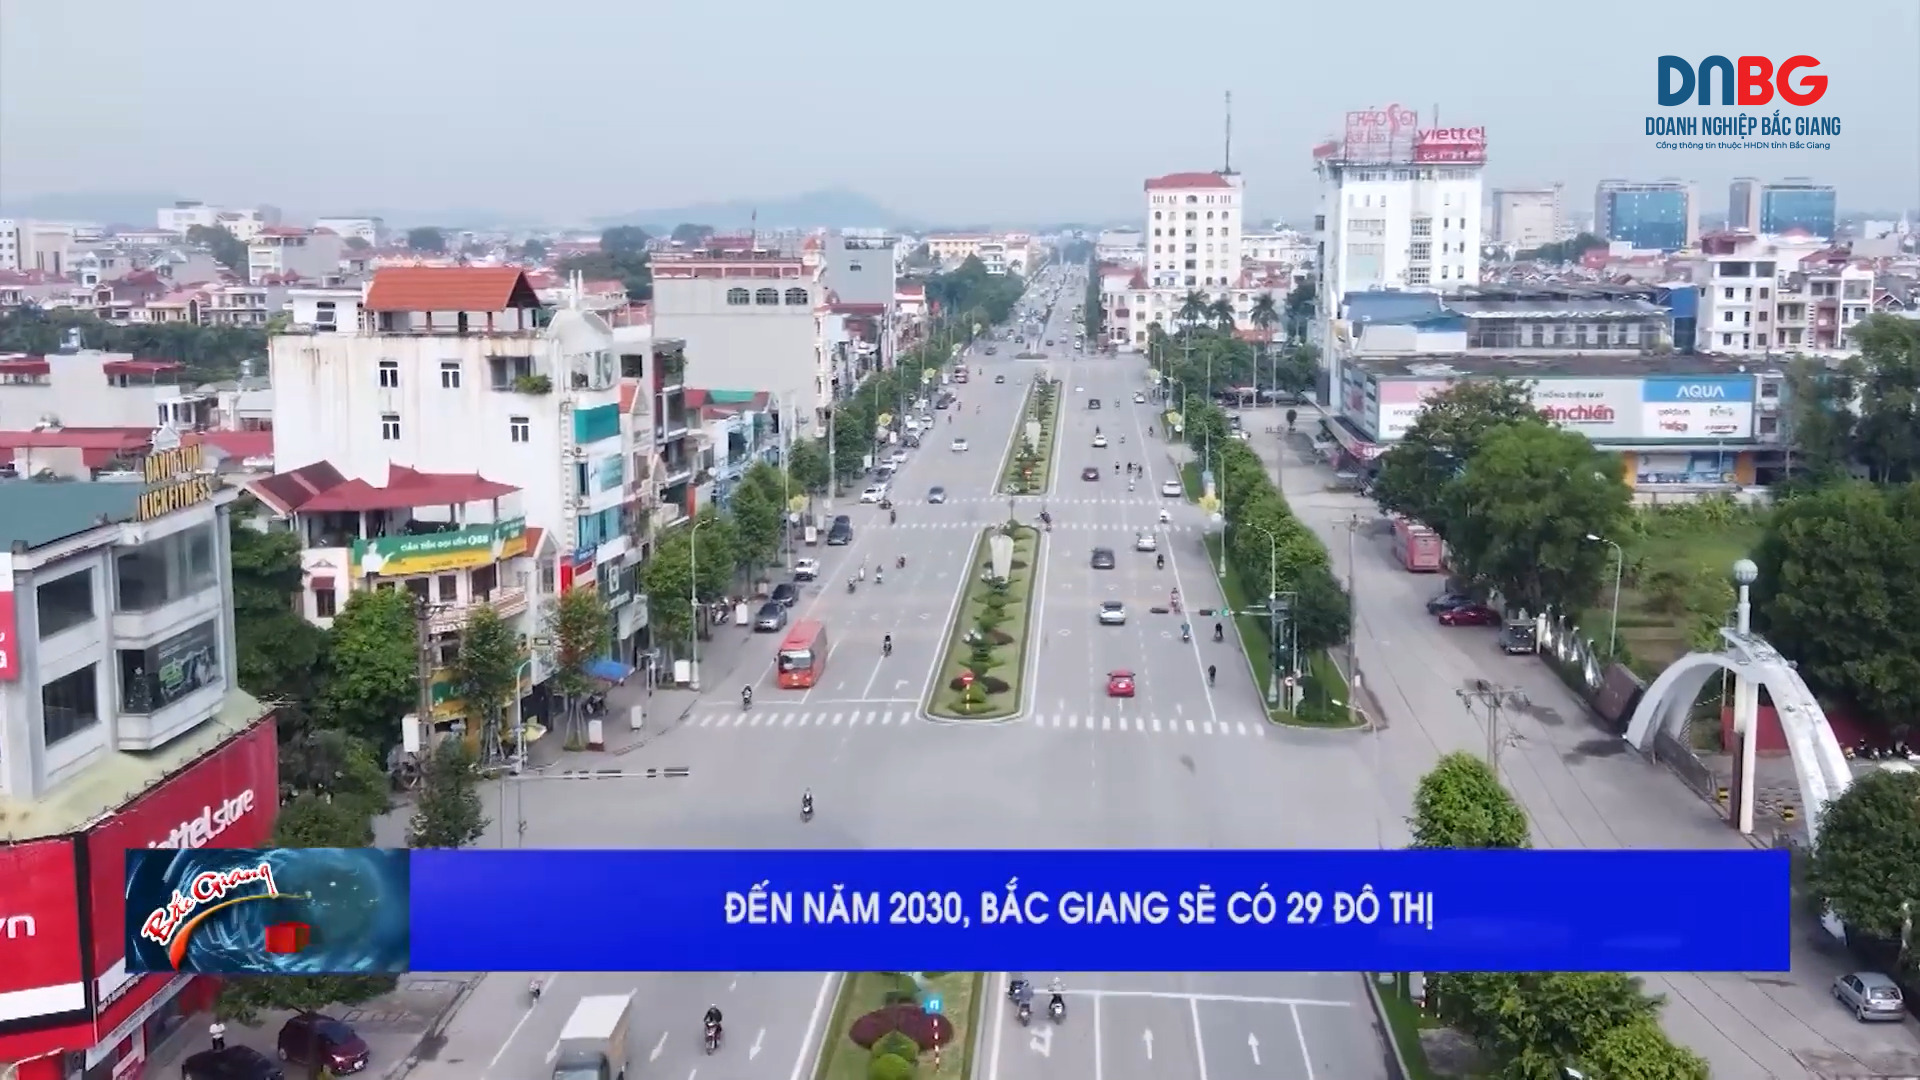 Bắc Giang đến năm 2030 sẽ có 29 đô thị.